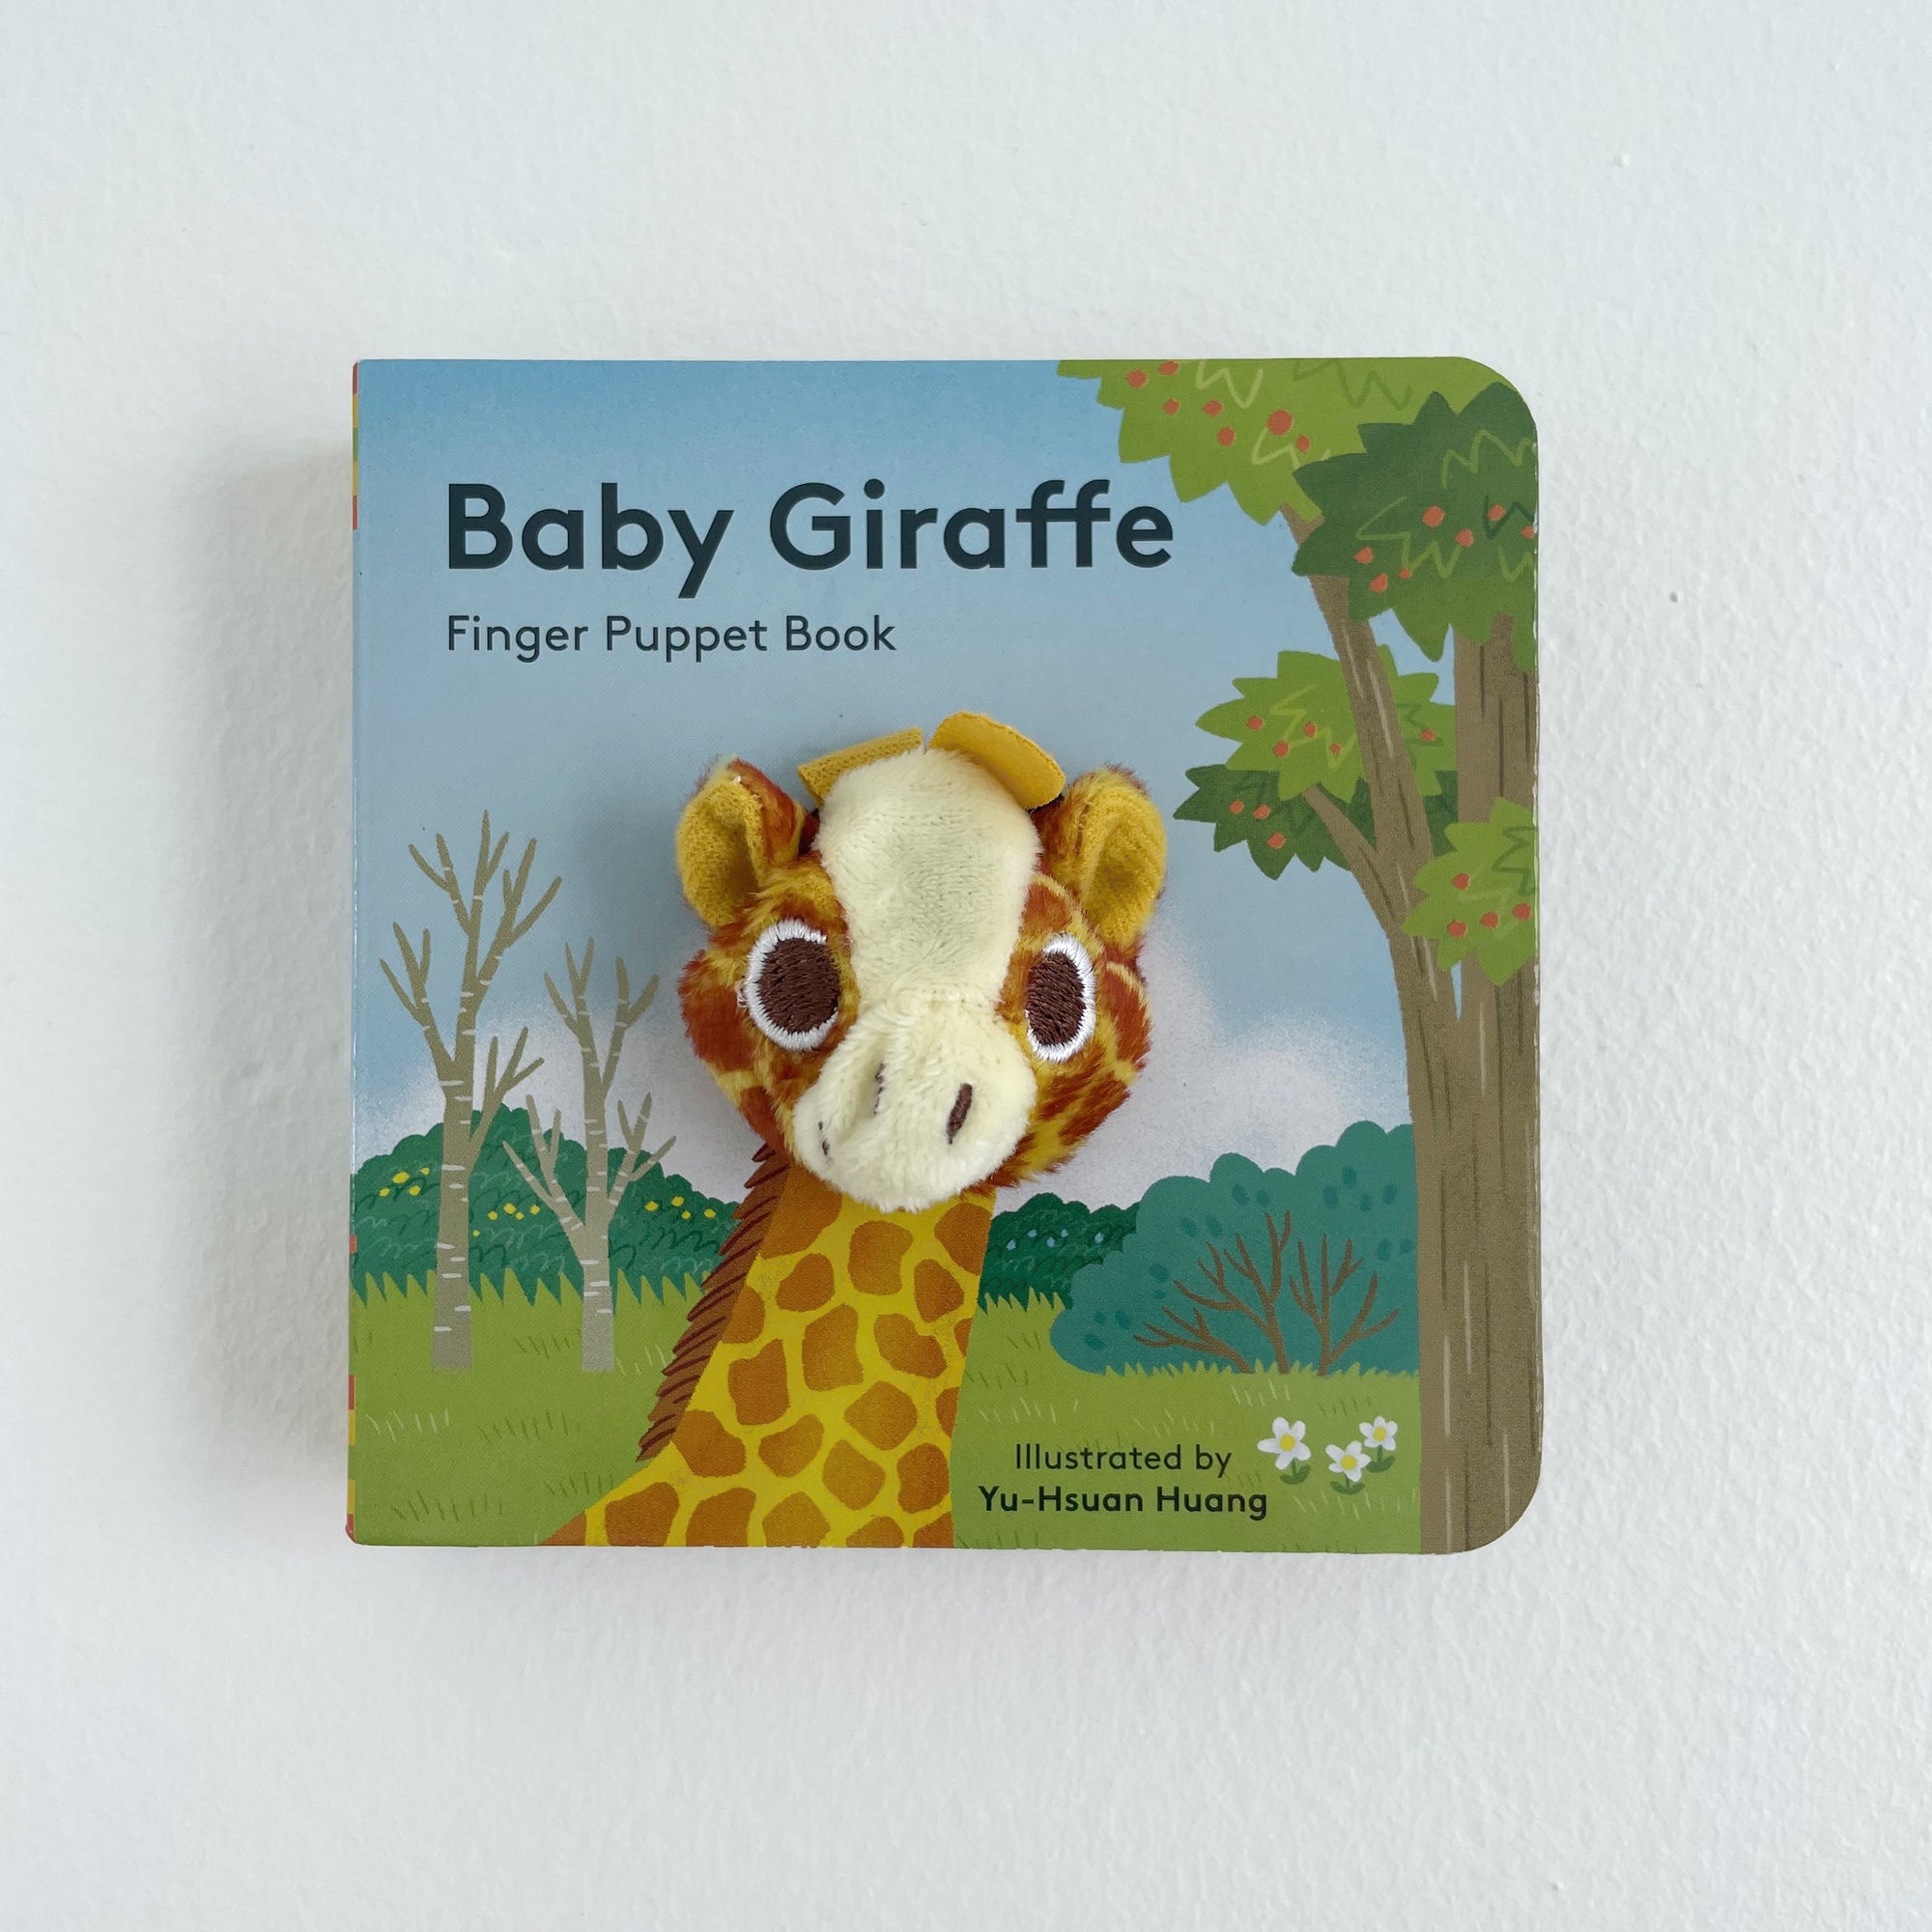 BABY GIRAFFE: FINGER PUPPET BOOK